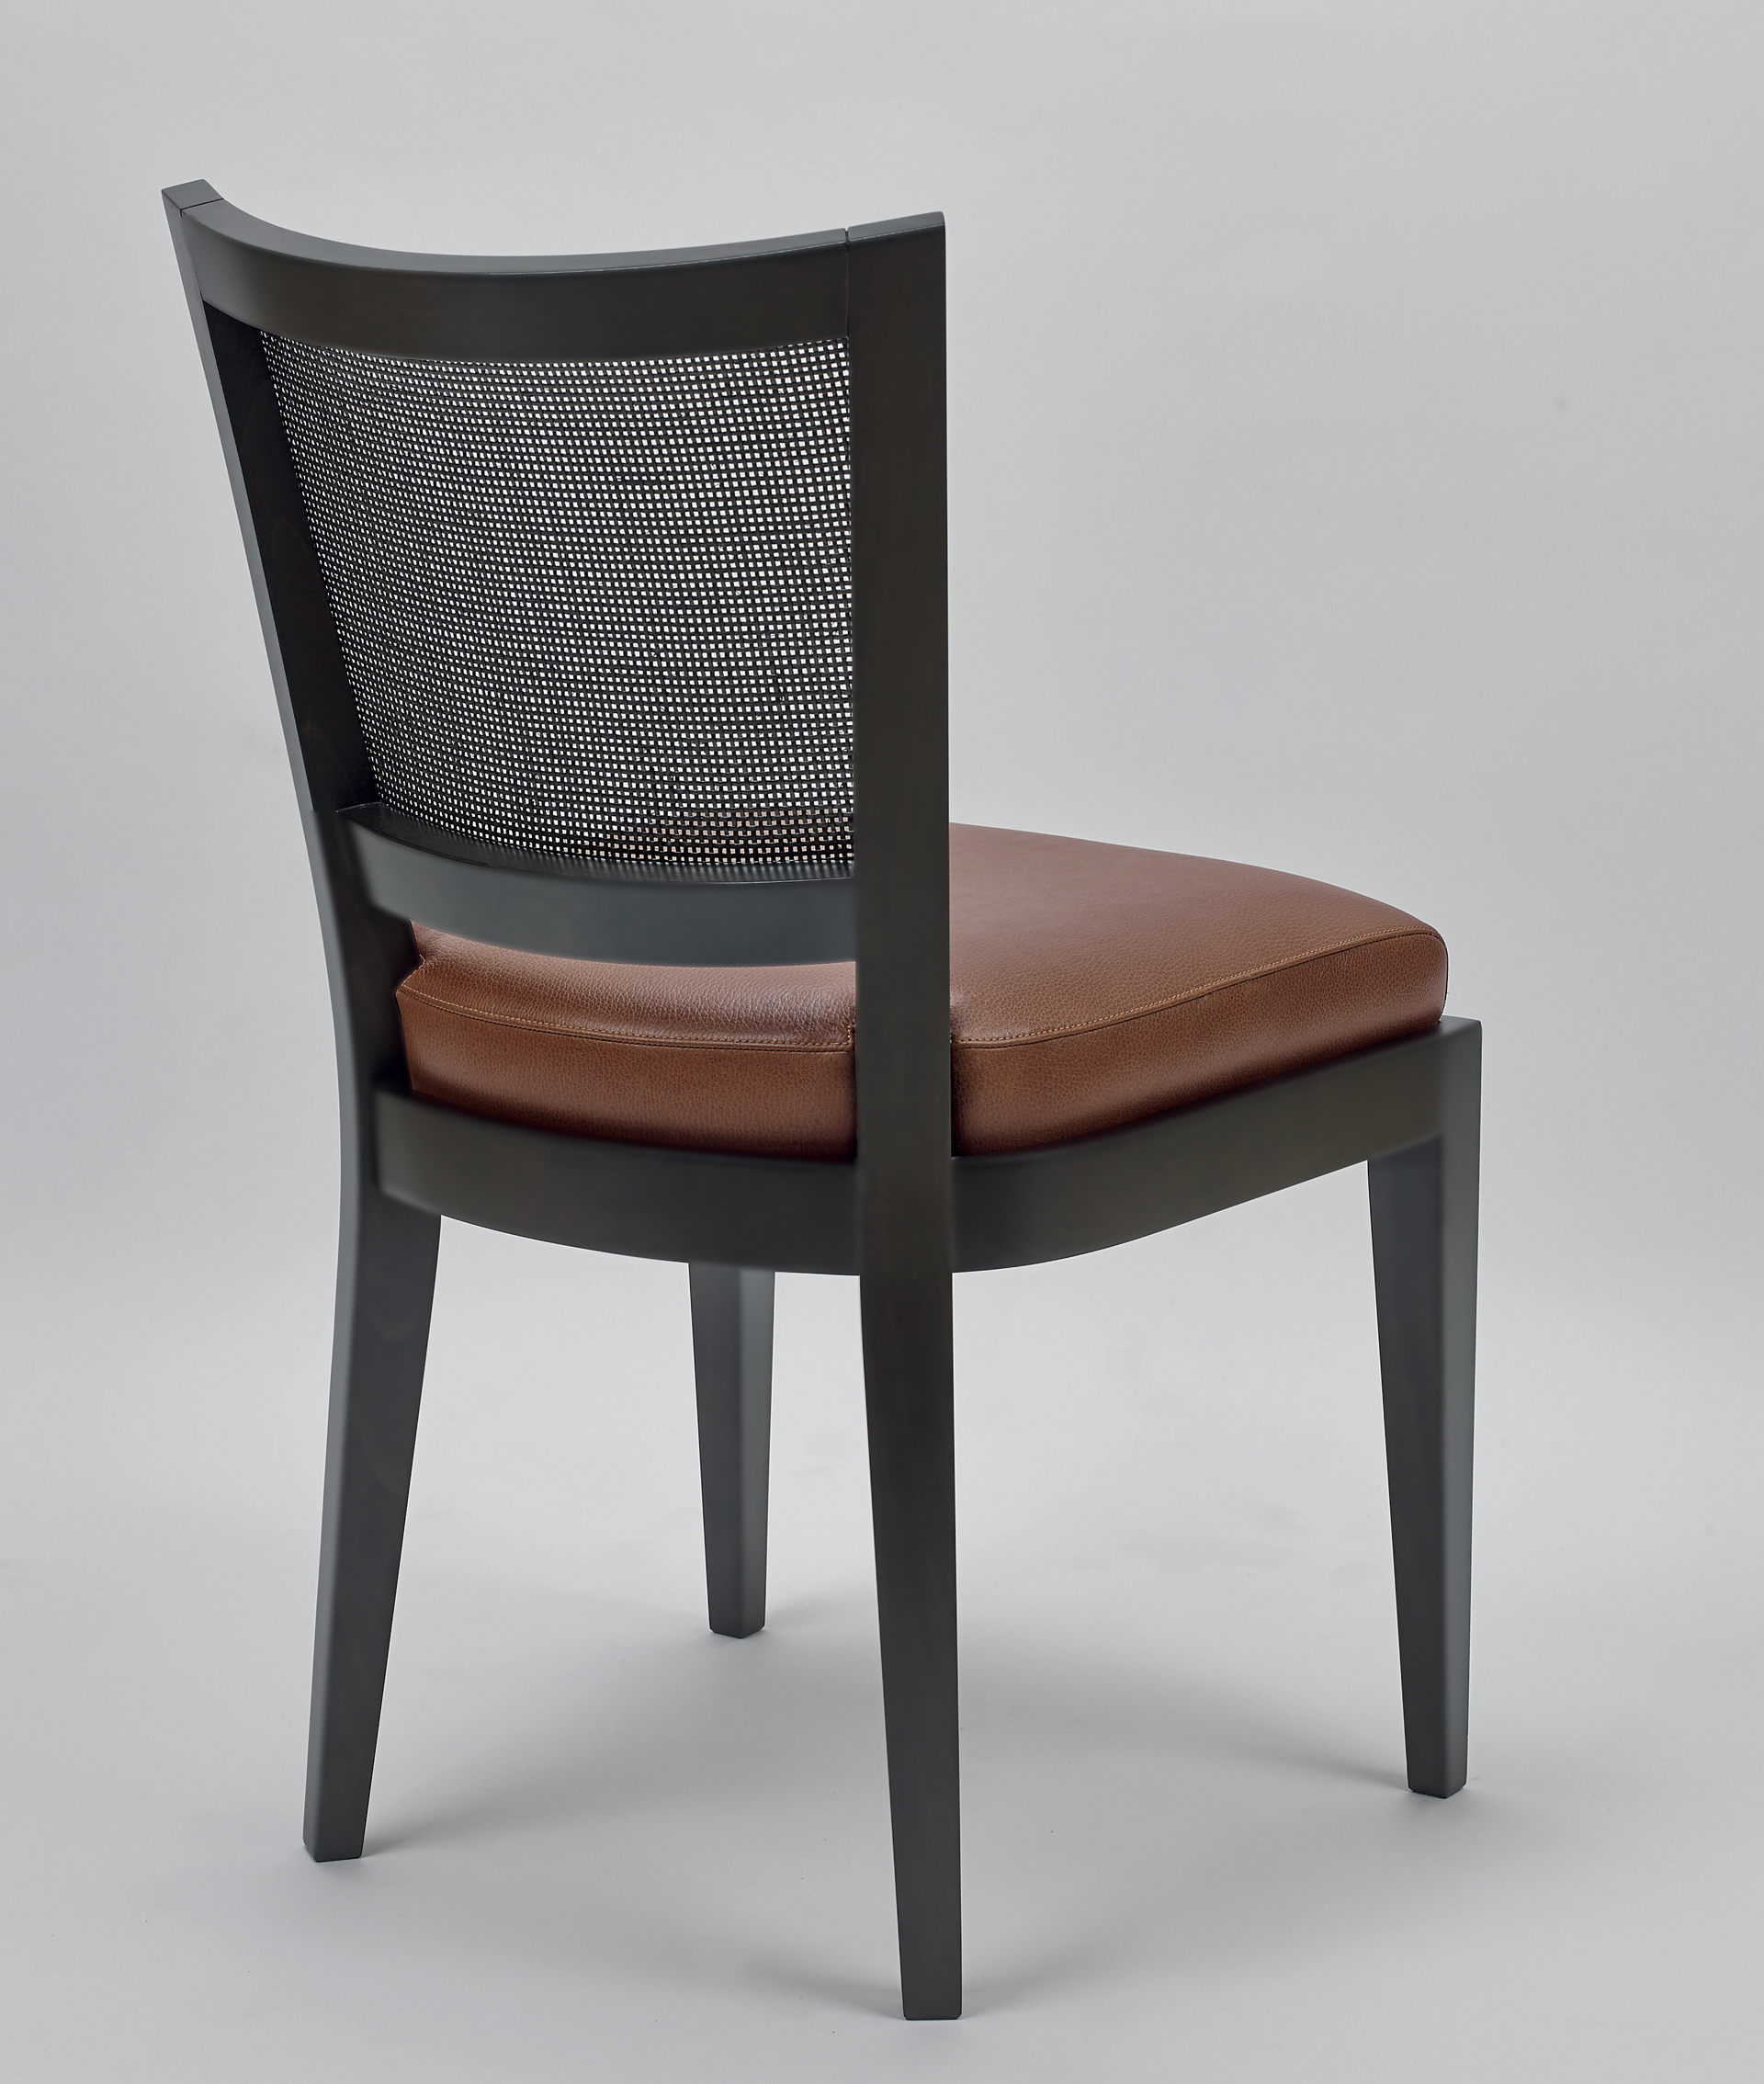 Caffè è una sedia da pranzo in legno con schienale in paglia e seduta in tessuto o pelle, del catalogo di Promemoria | Promemoria